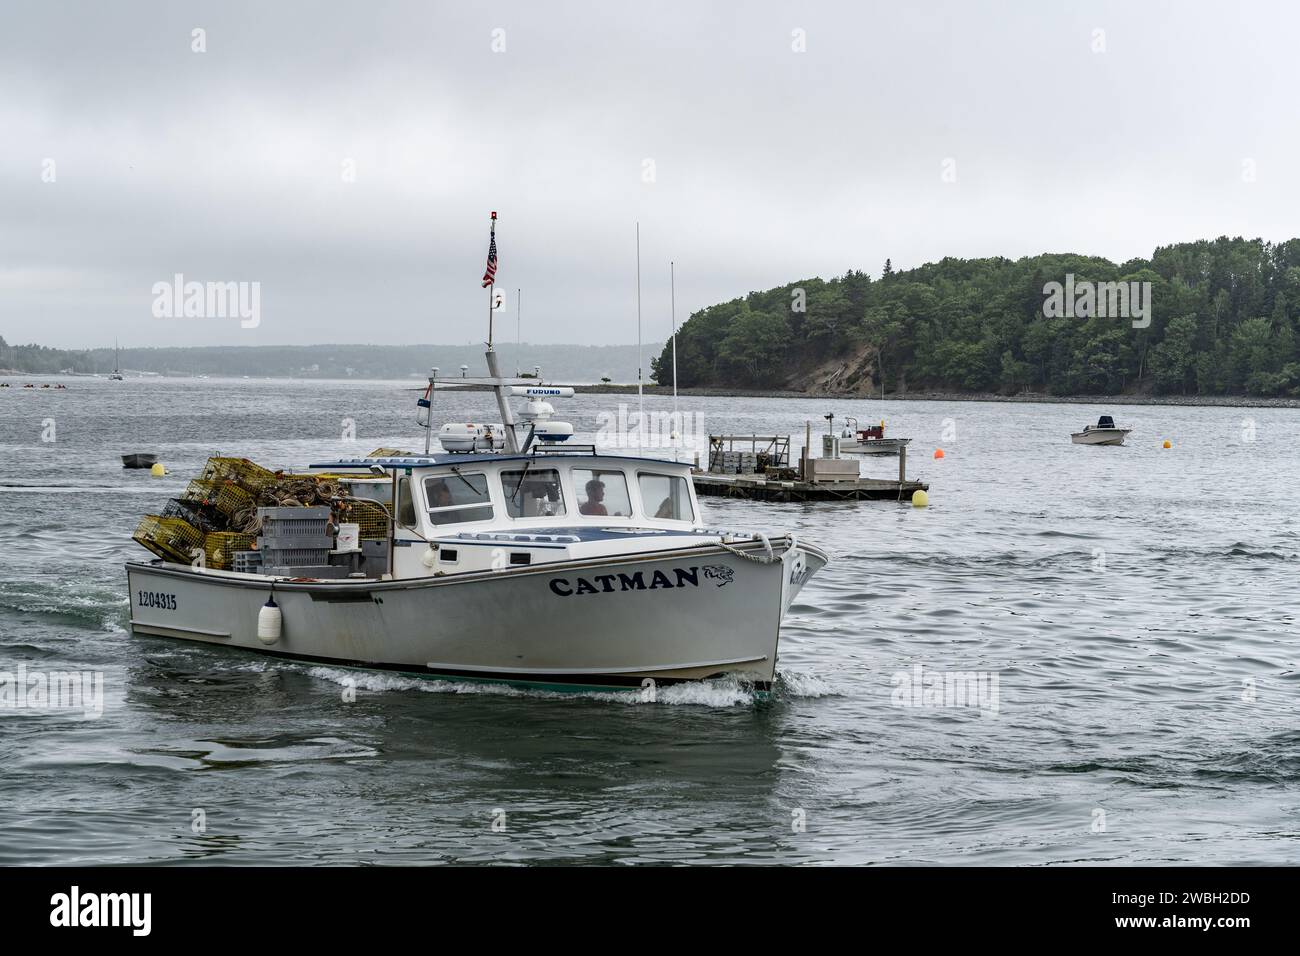 Porto di Boothbay, Maine - 14 luglio 2021: La barca per le aragoste arriva in porto dopo una giornata di raccolta di aragoste. Foto Stock